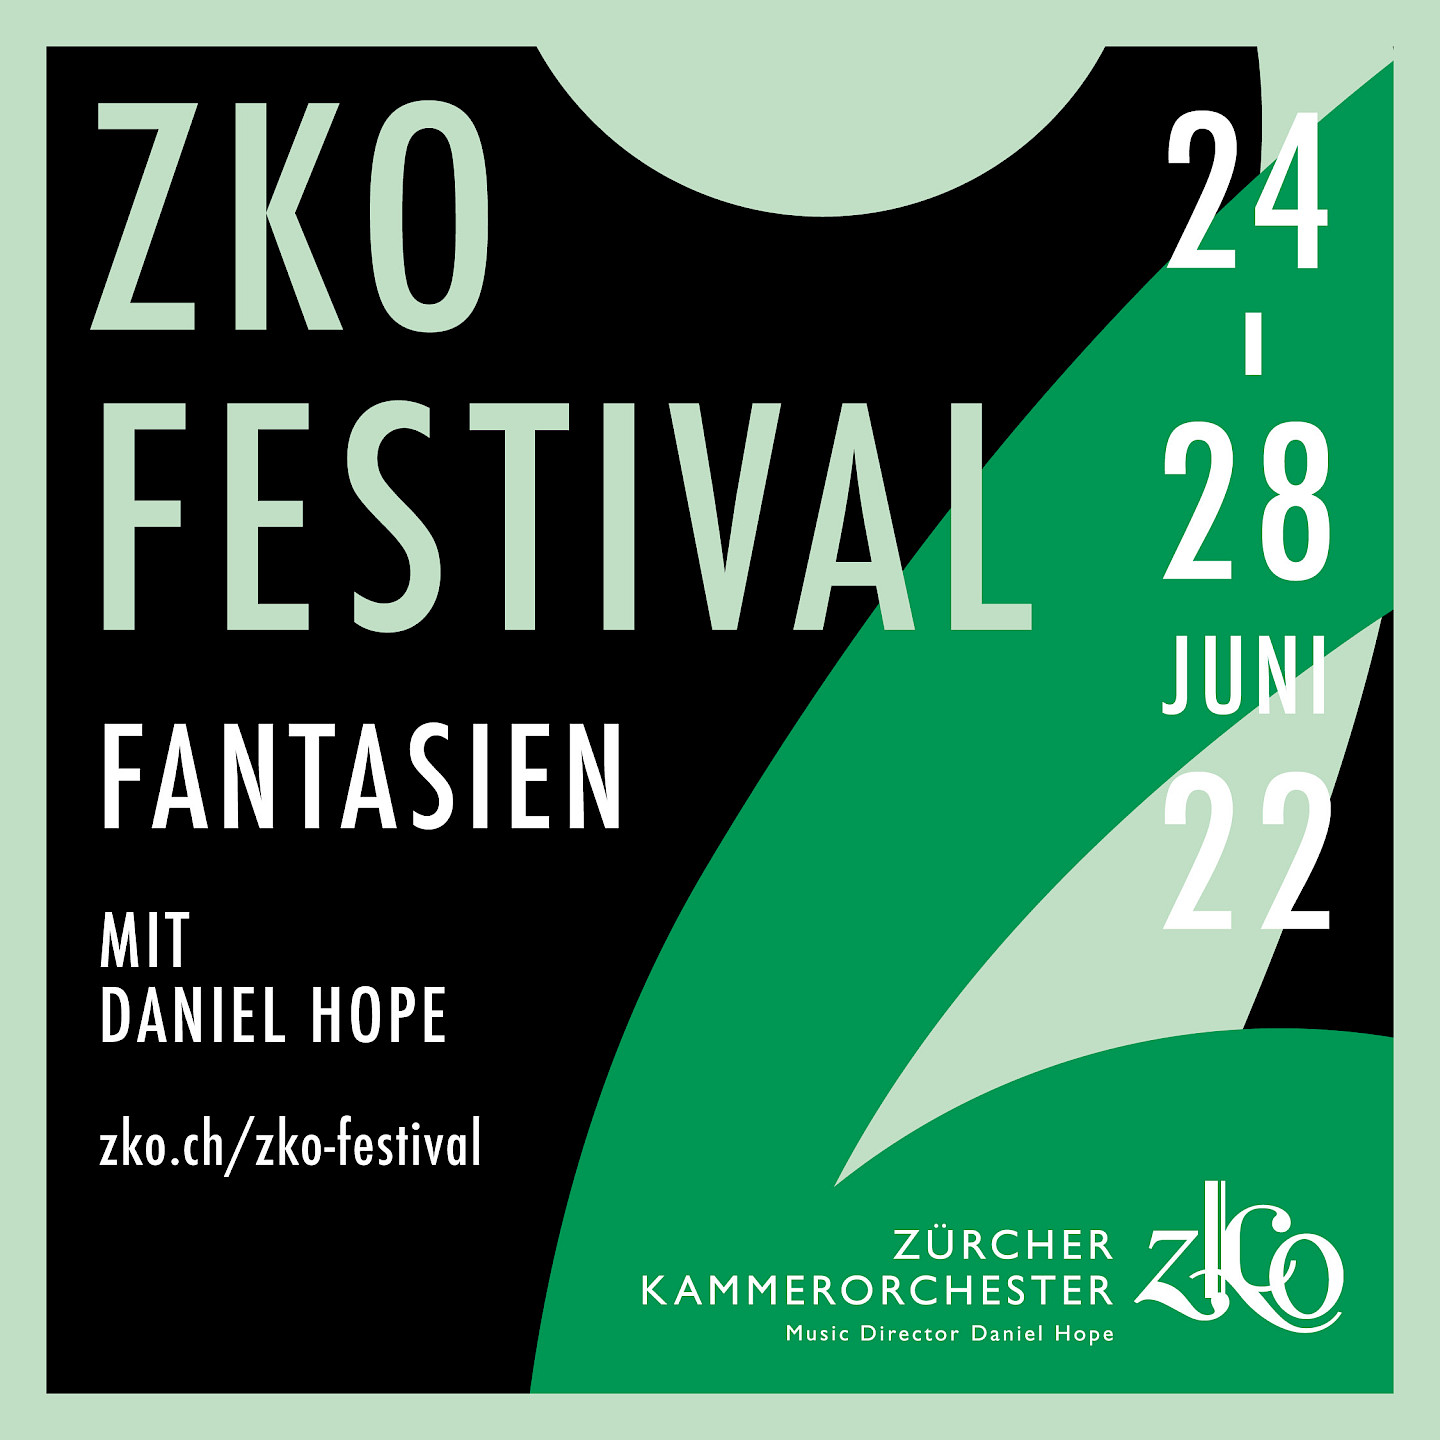 ZKO-Festival FANTASIEN